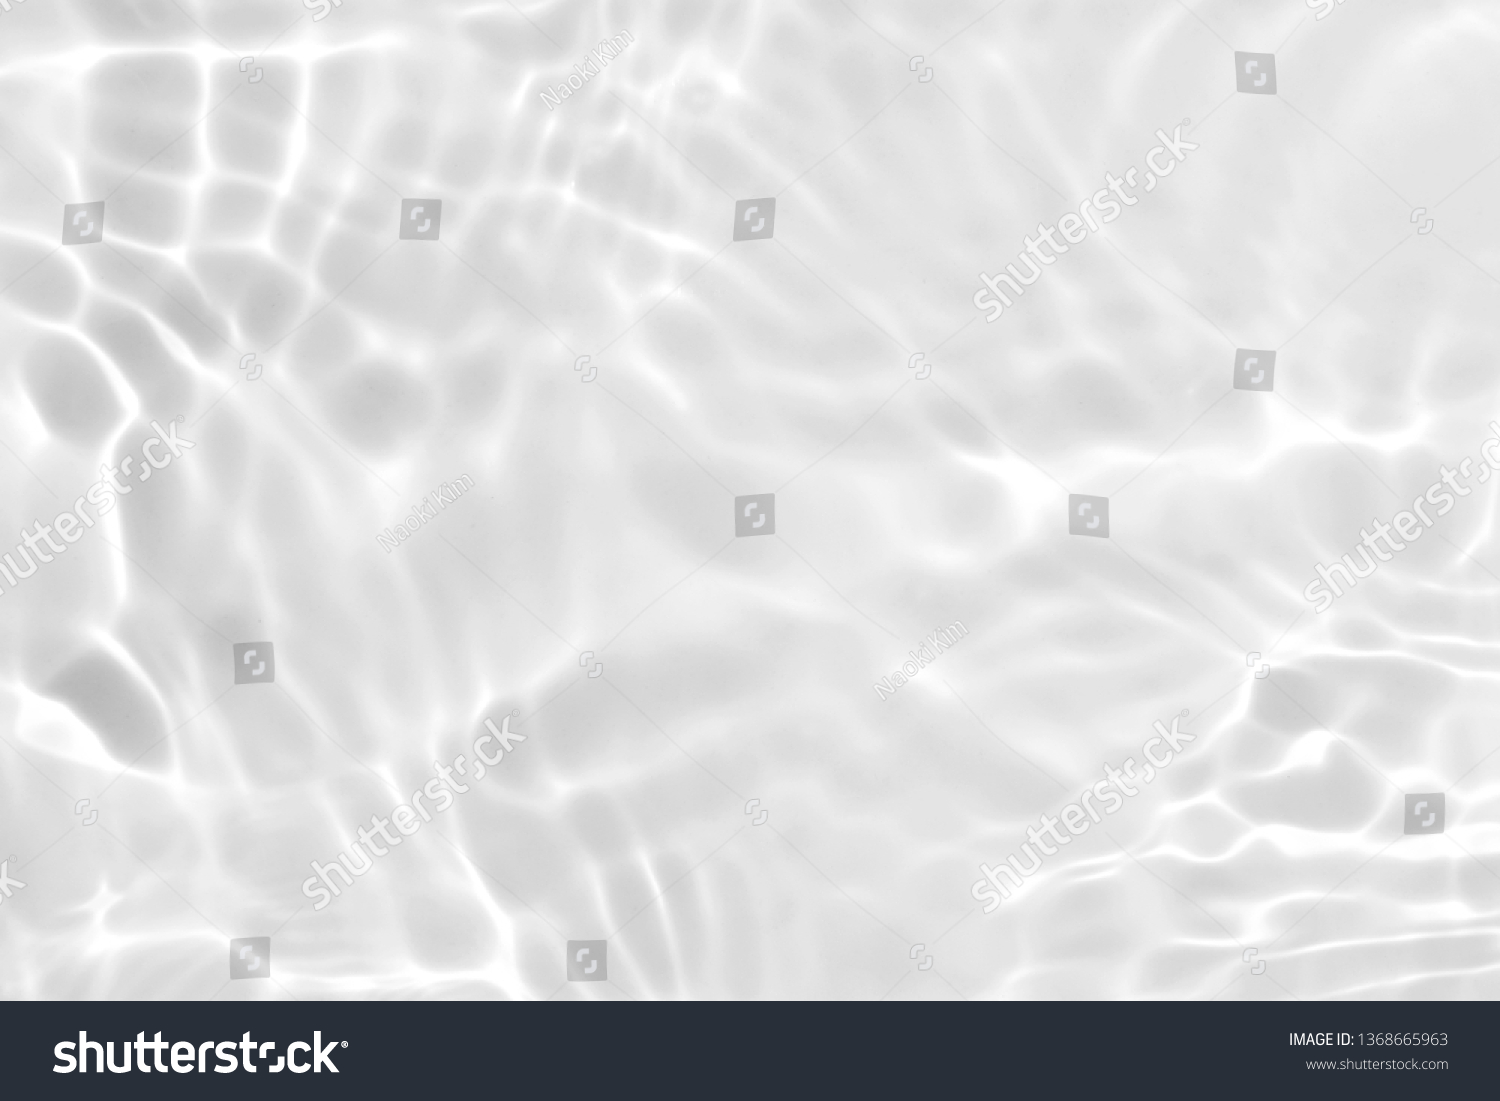 白い波の抽象的または波状の水テクスチャ背景 の写真素材 今すぐ編集